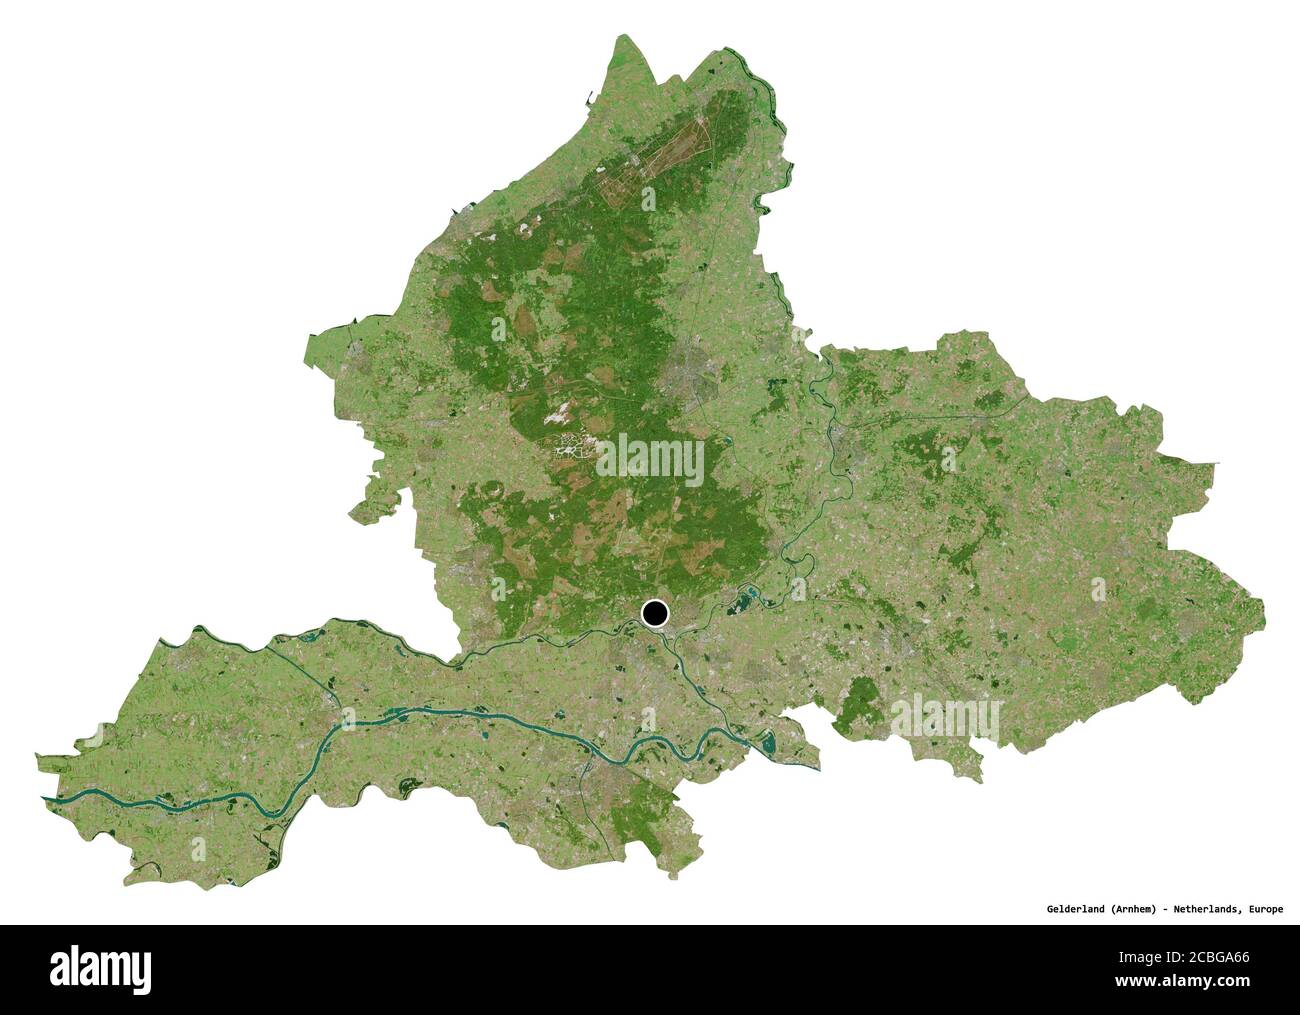 Forme de la Gelderland, province des pays-Bas, avec sa capitale isolée sur fond blanc. Imagerie satellite. Rendu 3D Banque D'Images